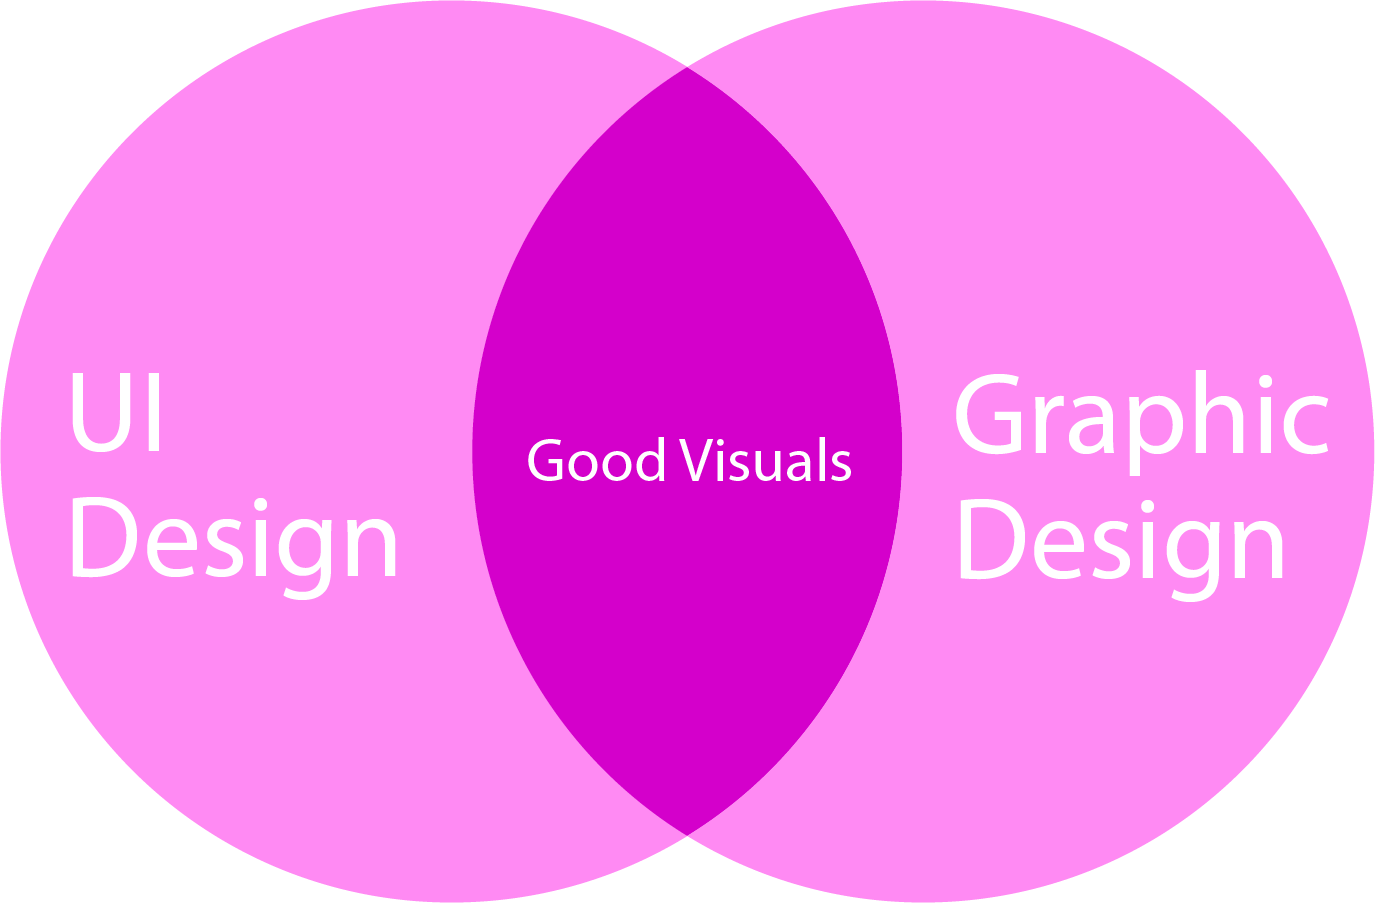  UI Design VS Graphic Design